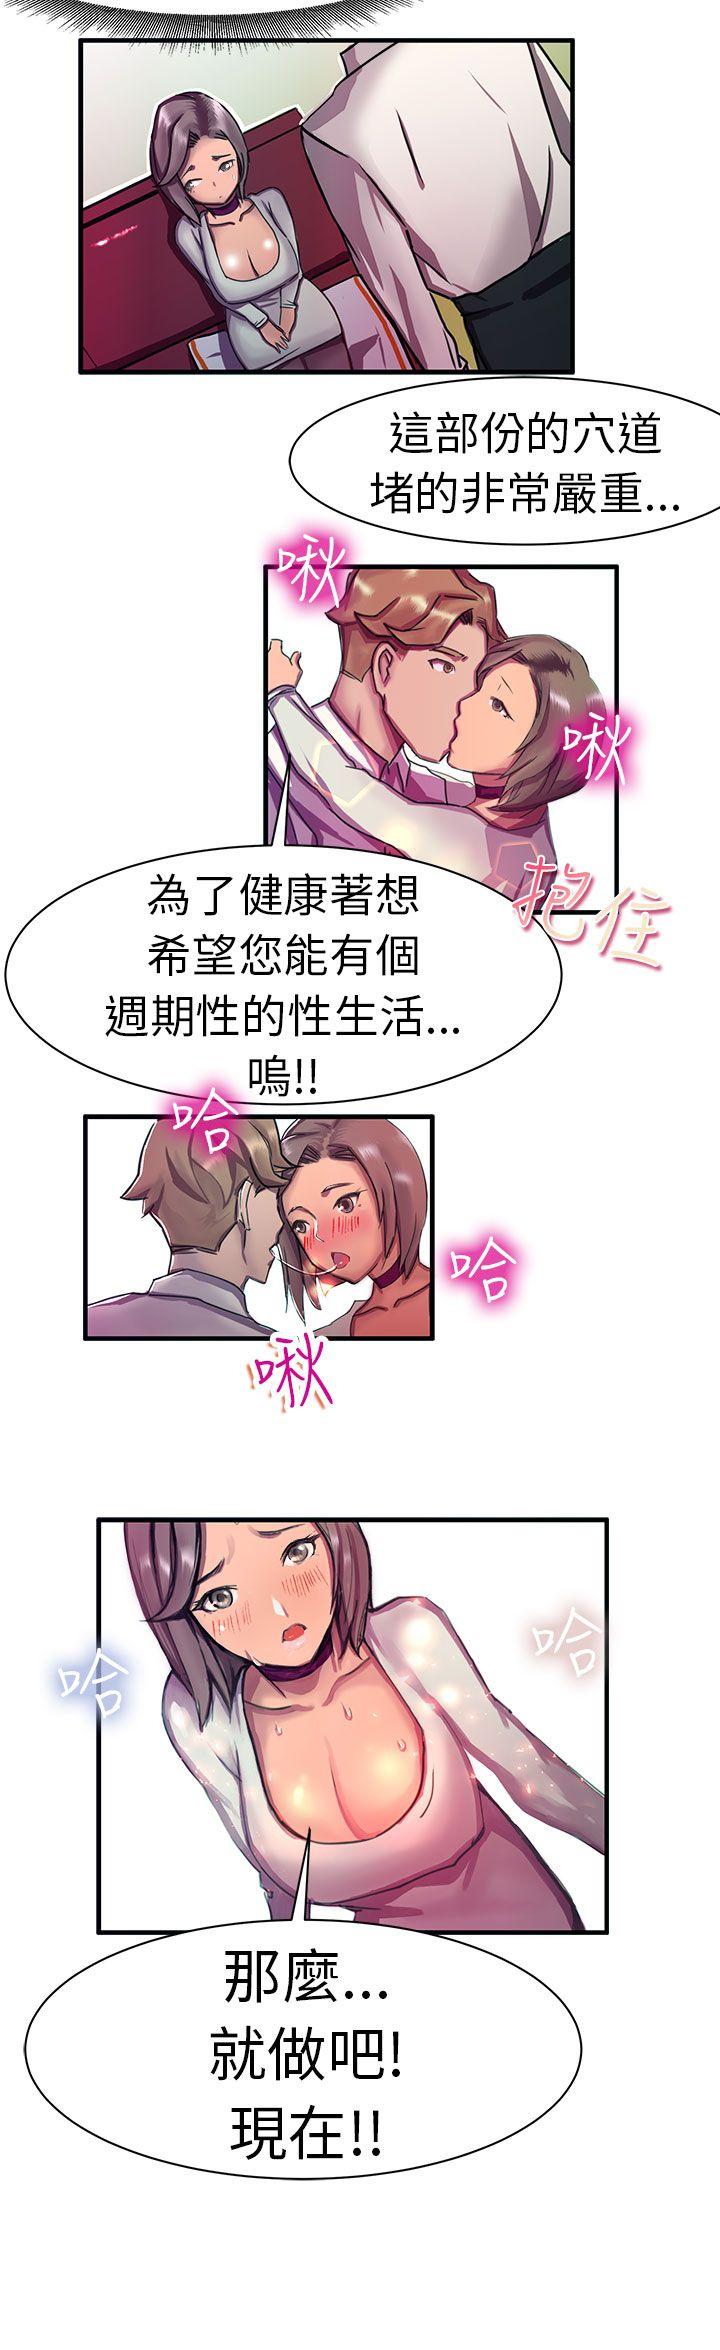 韩国污漫画 派愛達人 大企业社长的女儿(中) 16